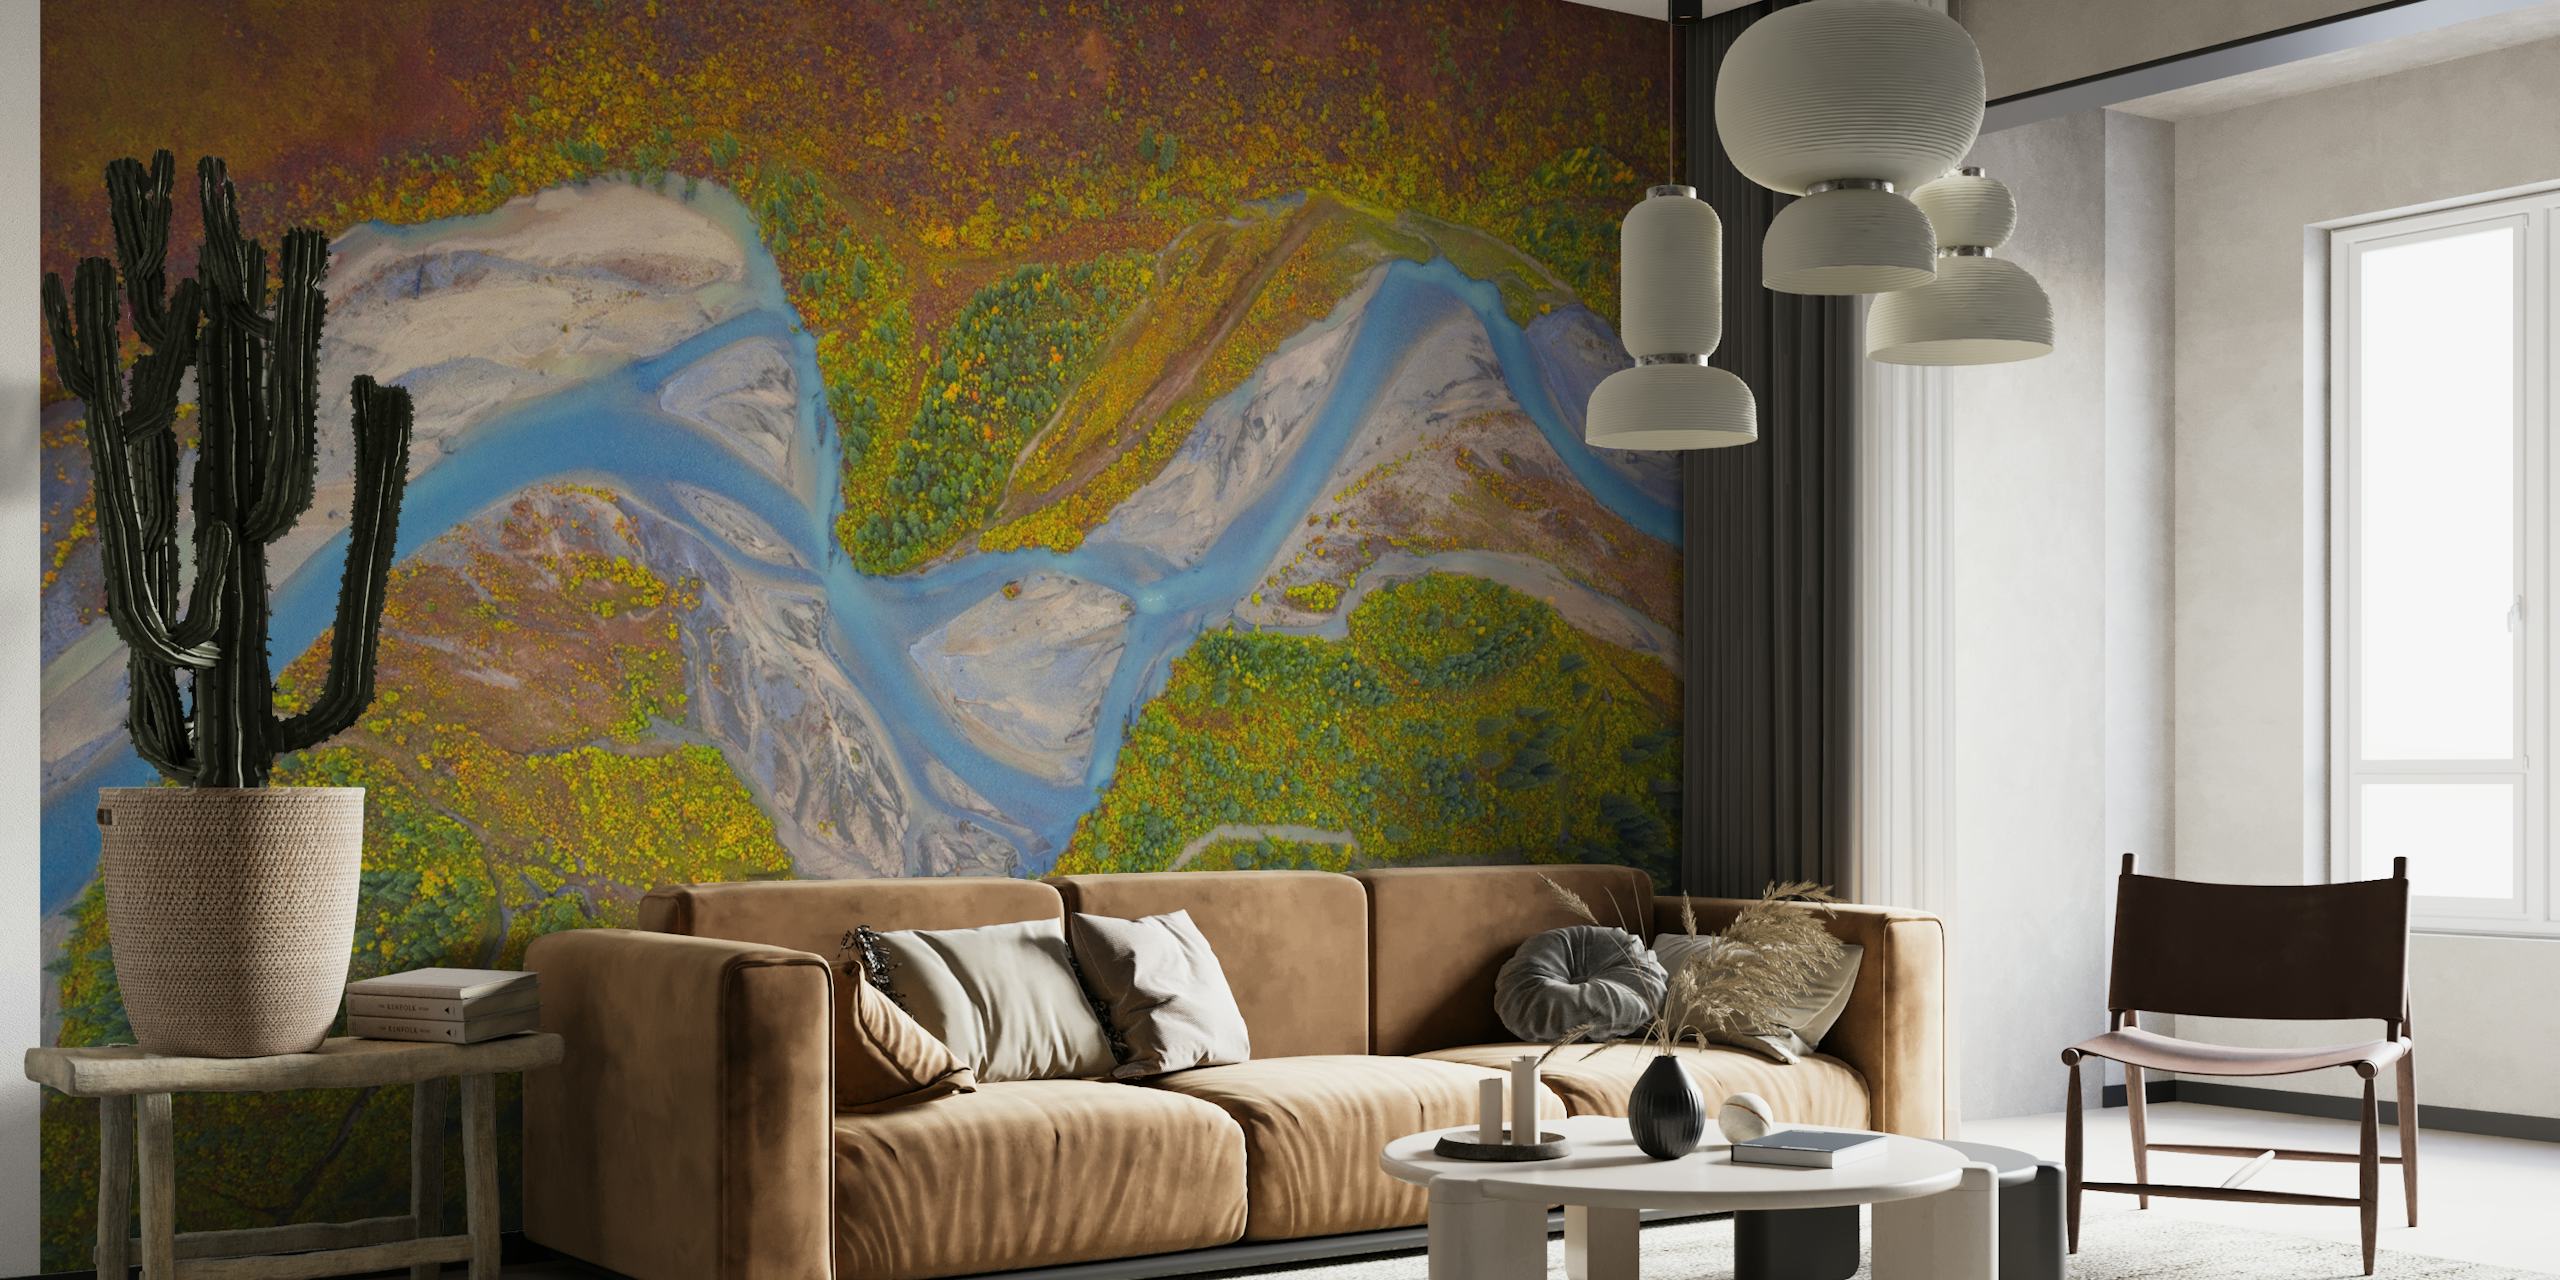 Murale de la rivière Matanuska avec un paysage pittoresque de l'Alaska, mettant en vedette une rivière sinueuse et des prairies colorées